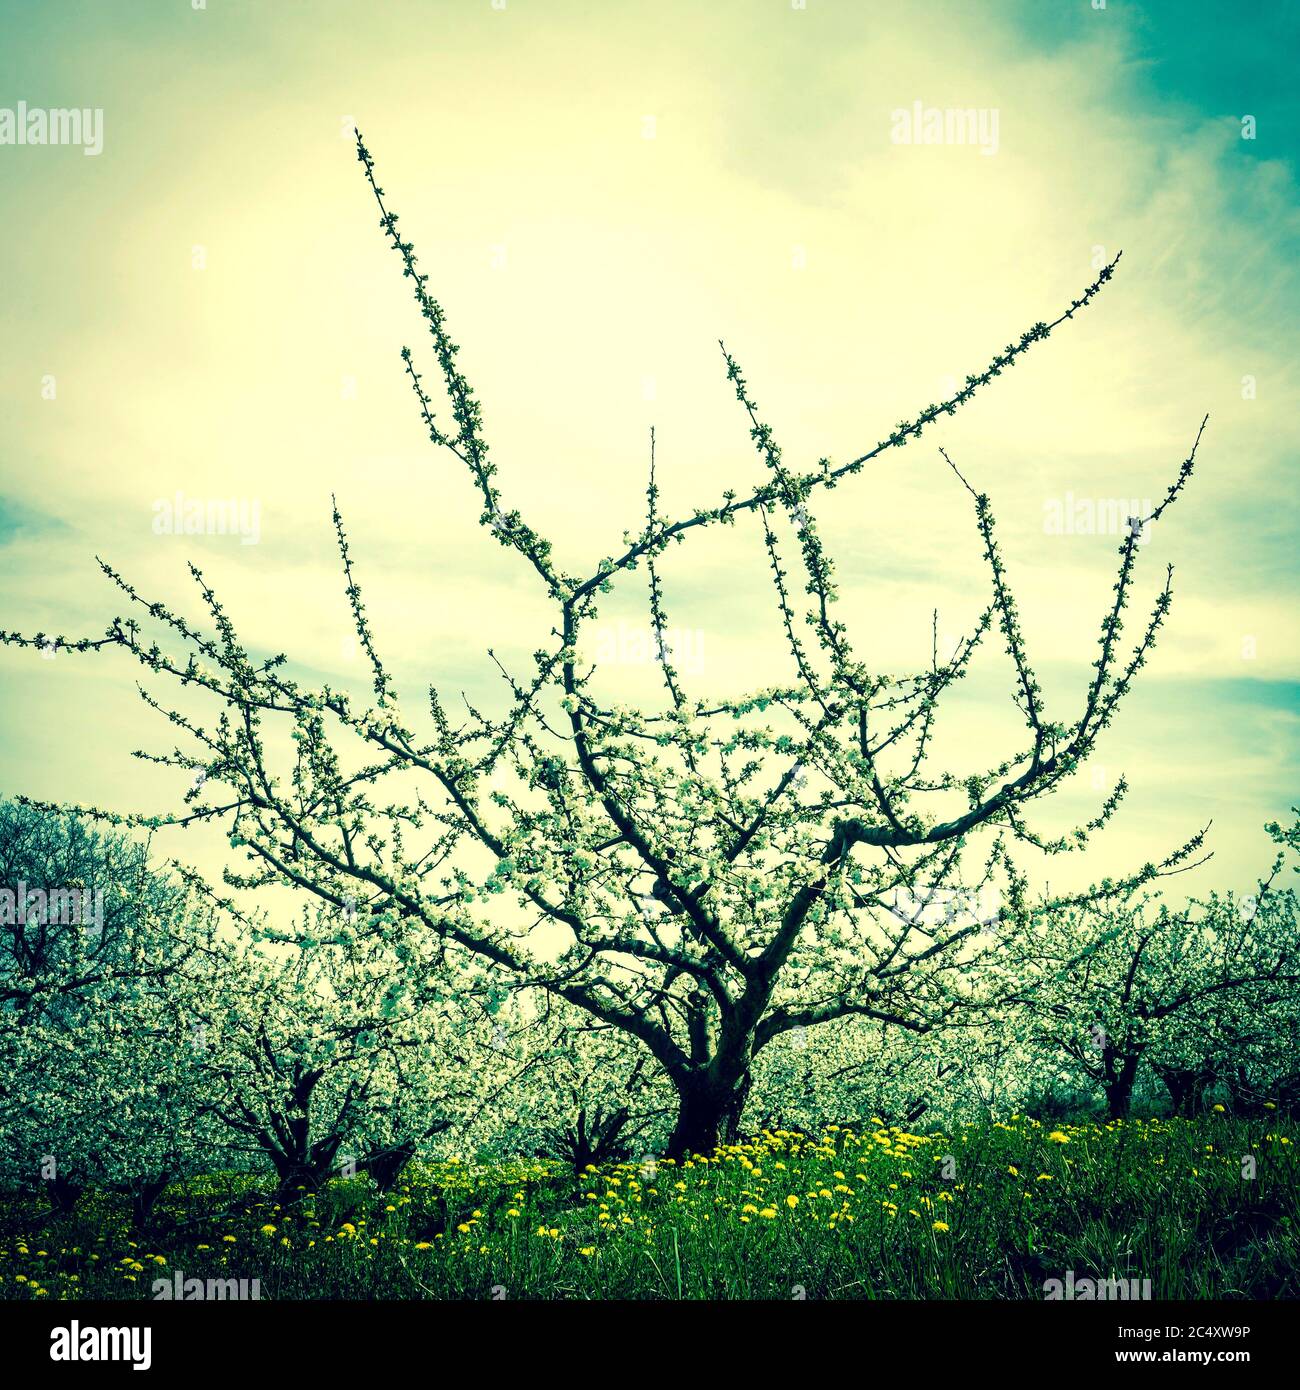 Orchard, Limagne plain, Puy de Dome, Auvergne-Rhone-Alpes,France Stock Photo